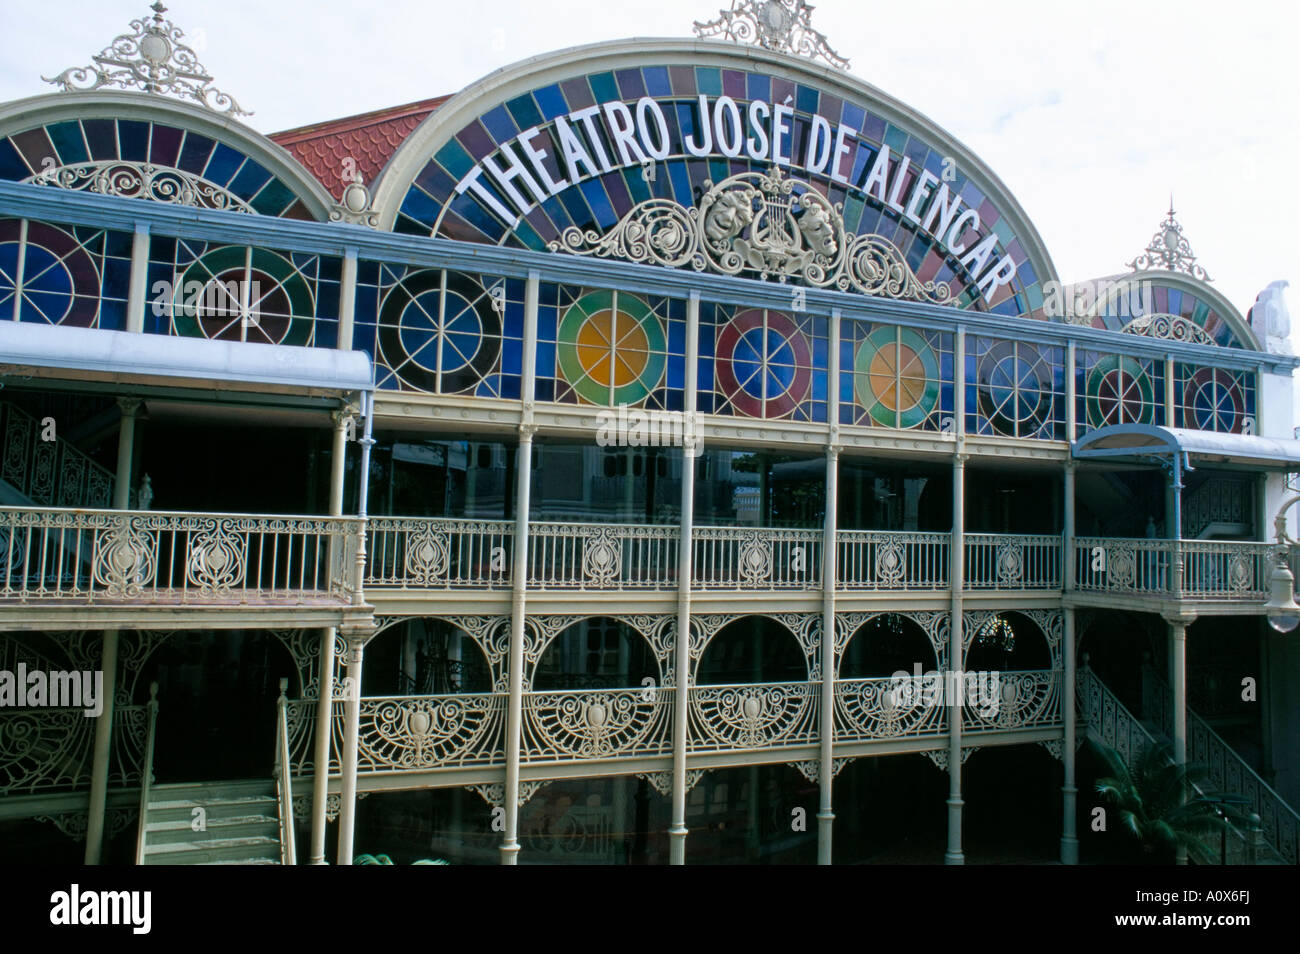 Theatro José de Alencar Theater ein Pastell farbigen Mischung aus klassischen und Jugendstil-Architektur Fortaleza Ceara Brasilien Süd Stockfoto